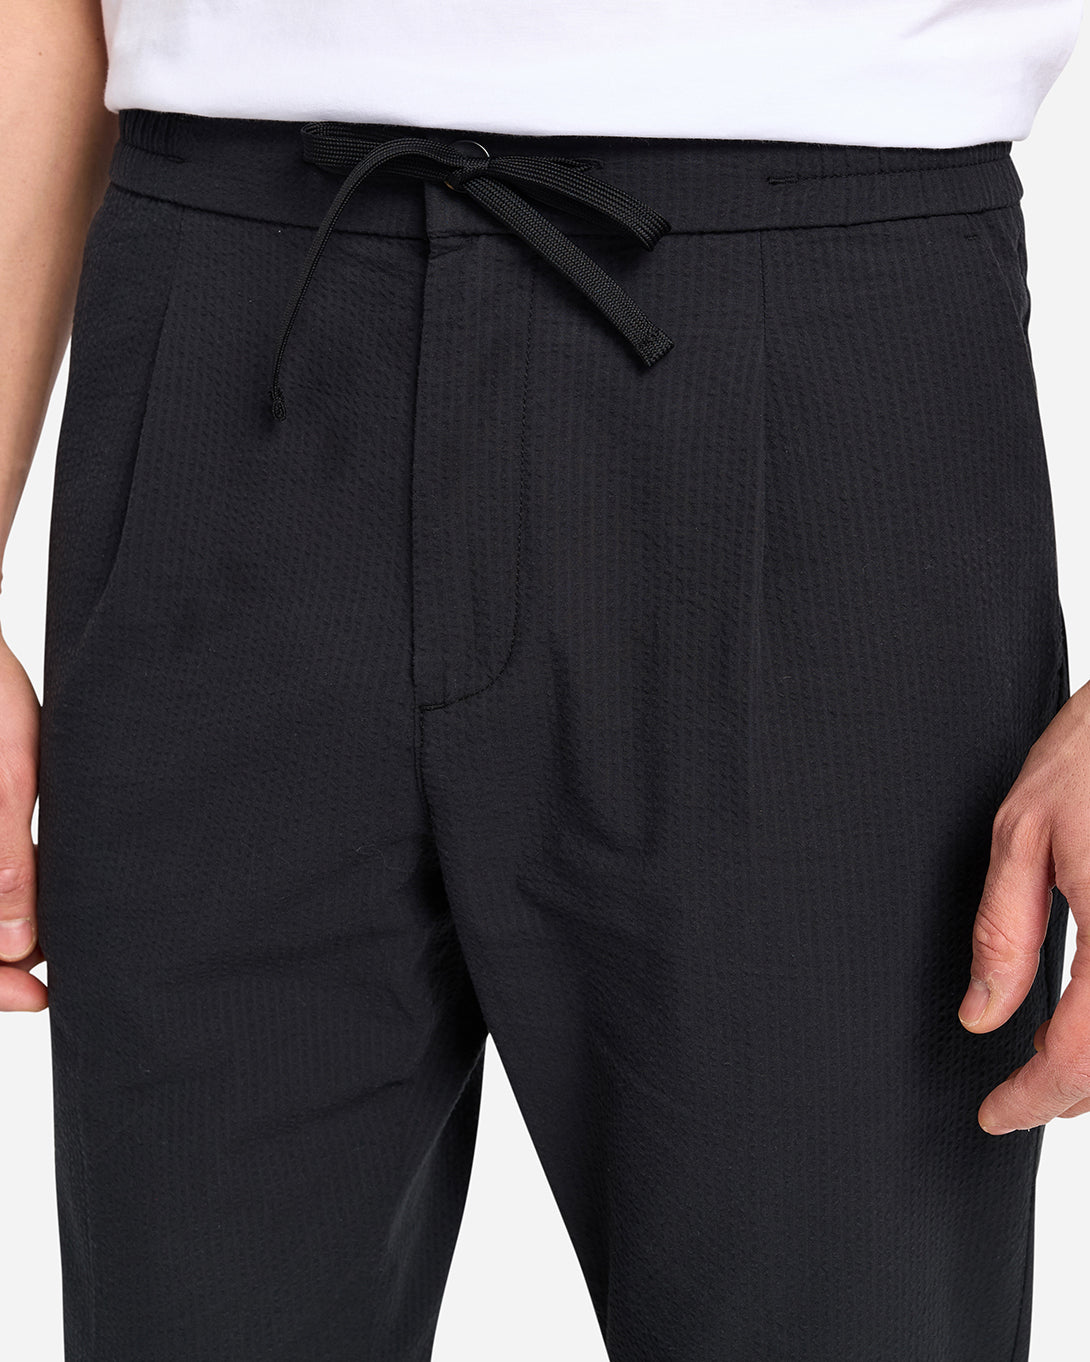 BLACK Wayne Seersucker Trousers Mens Lightweight Drawstring Pants